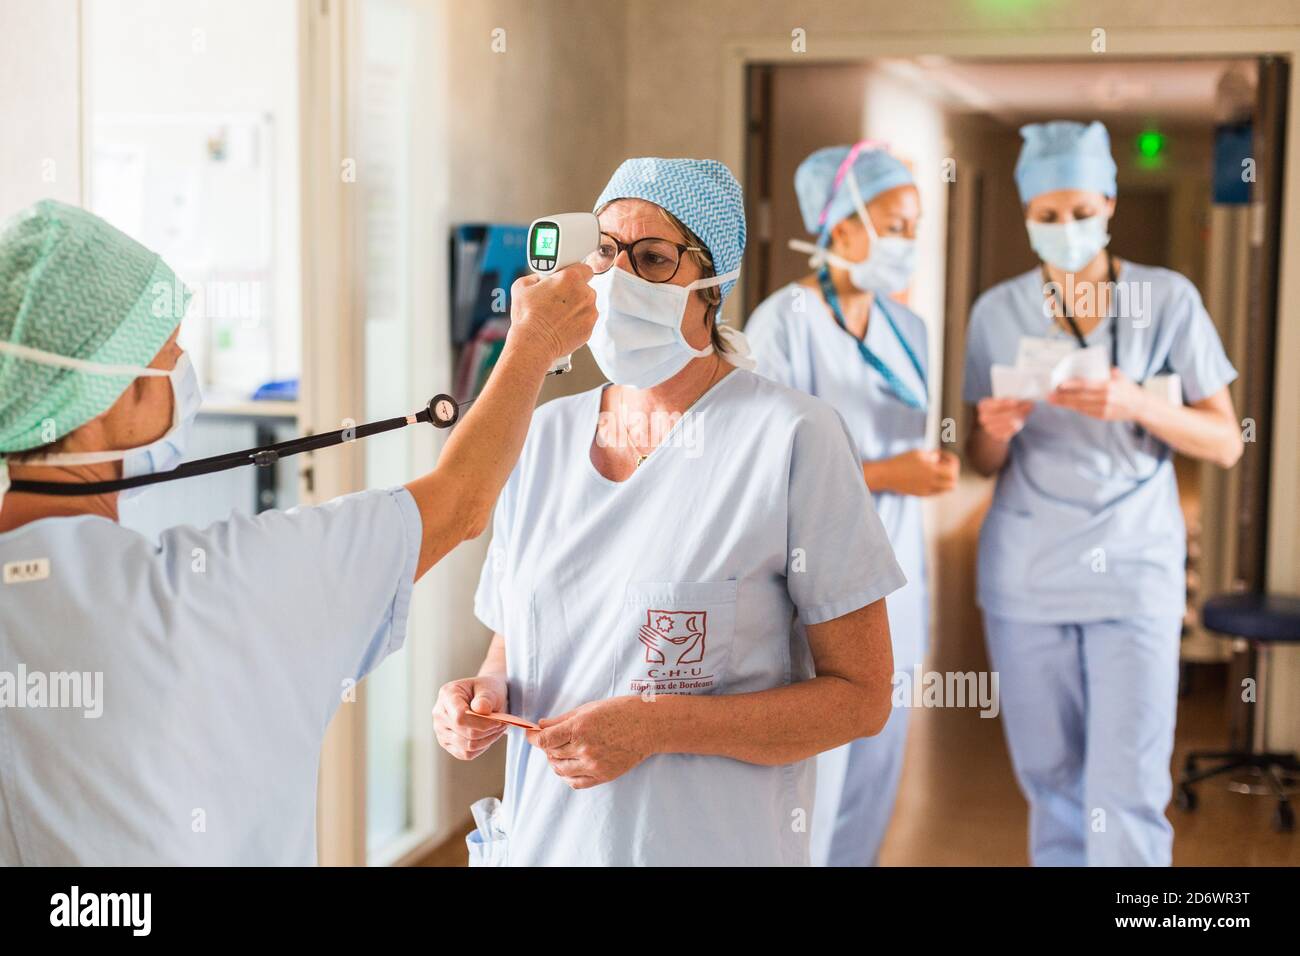 Wiederaufnahme der Tätigkeit in der multifunktionalen ambulanten Chirurgie mit Überwachung der COVID Gesundheitssicherheitsprotokolle, Krankenhaus Bordeaux, Mai 2020. Stockfoto